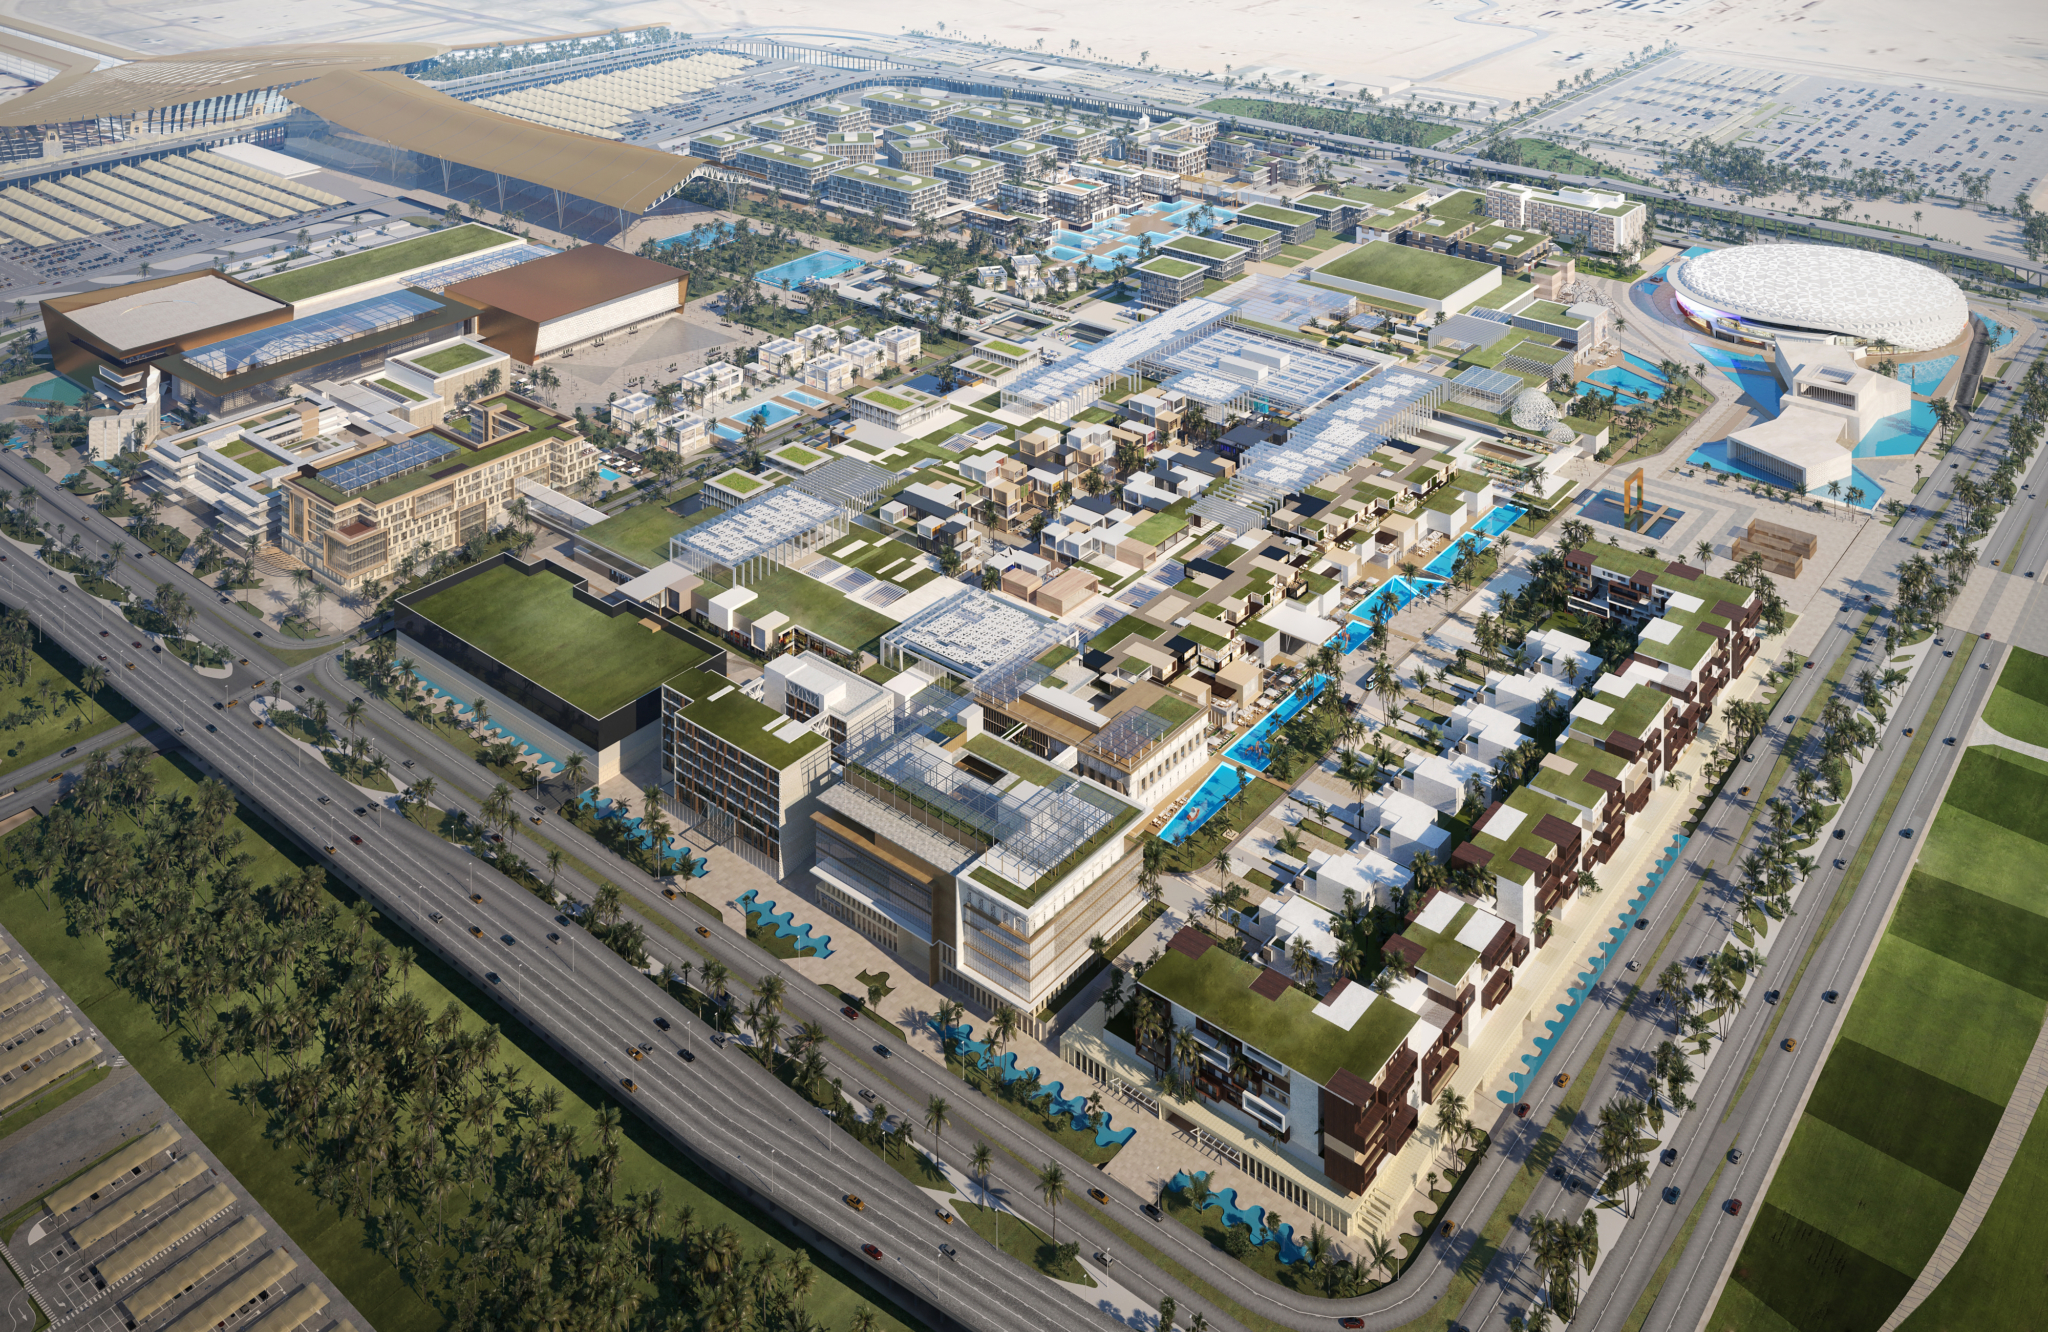 افتتاح اكبر مركز تجاري صيني في جدة اليوم صحيفة المدار